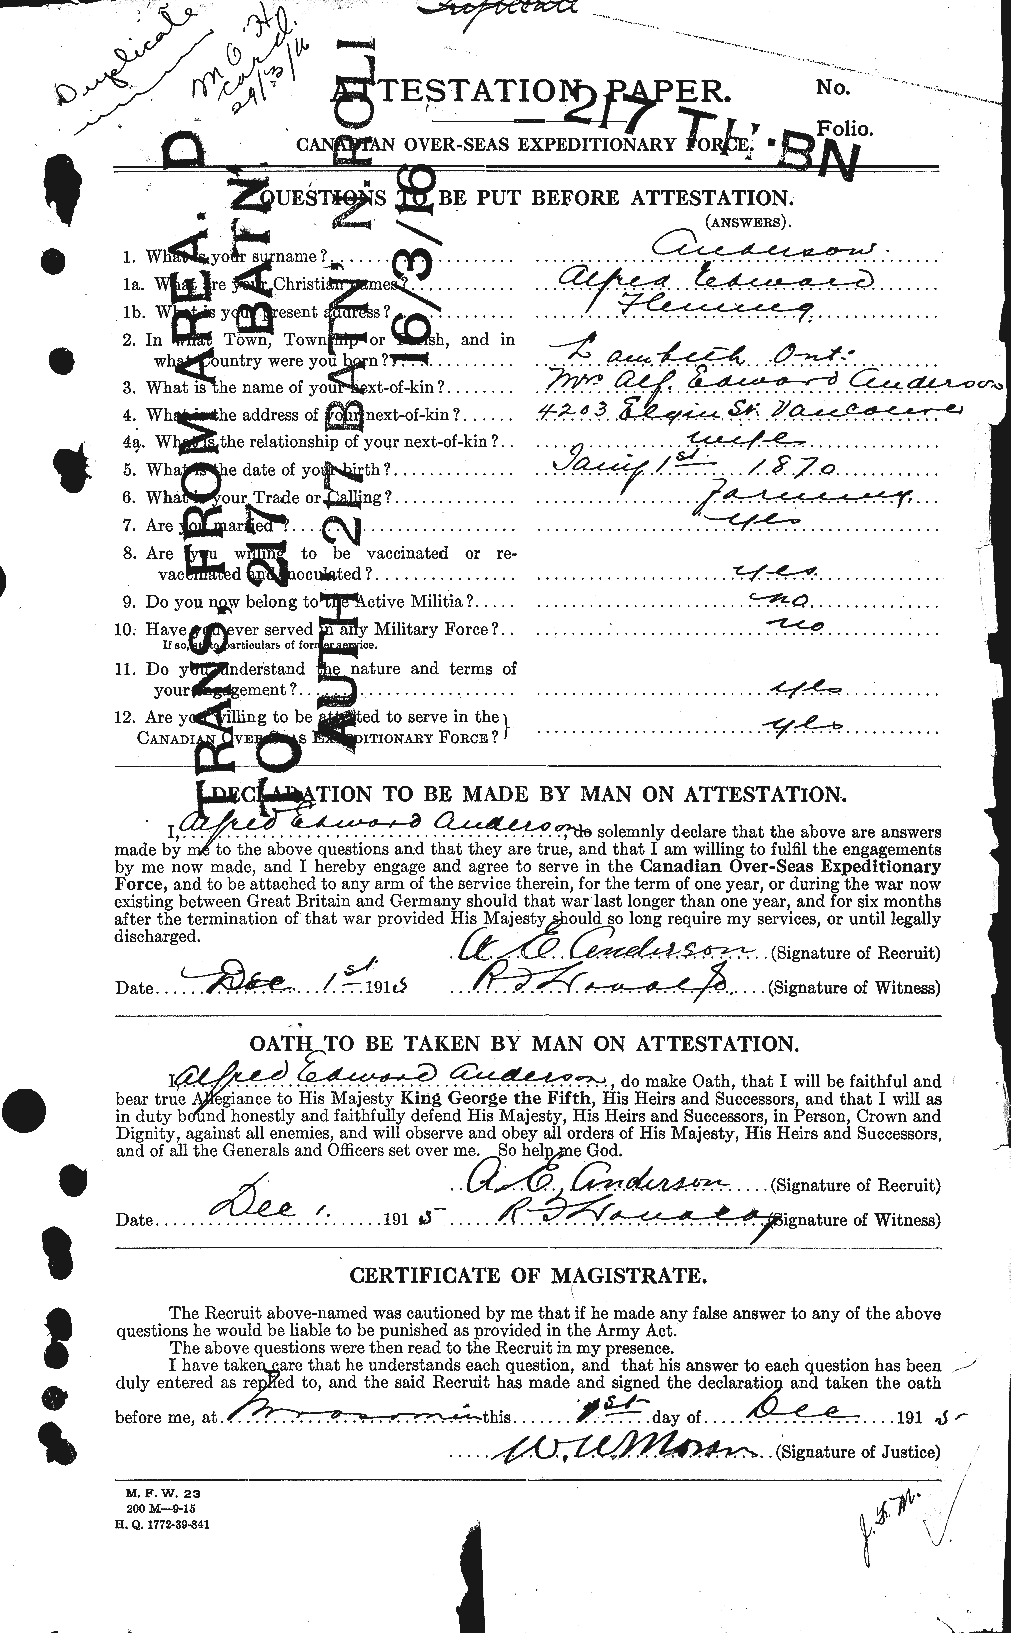 Dossiers du Personnel de la Première Guerre mondiale - CEC 209455a